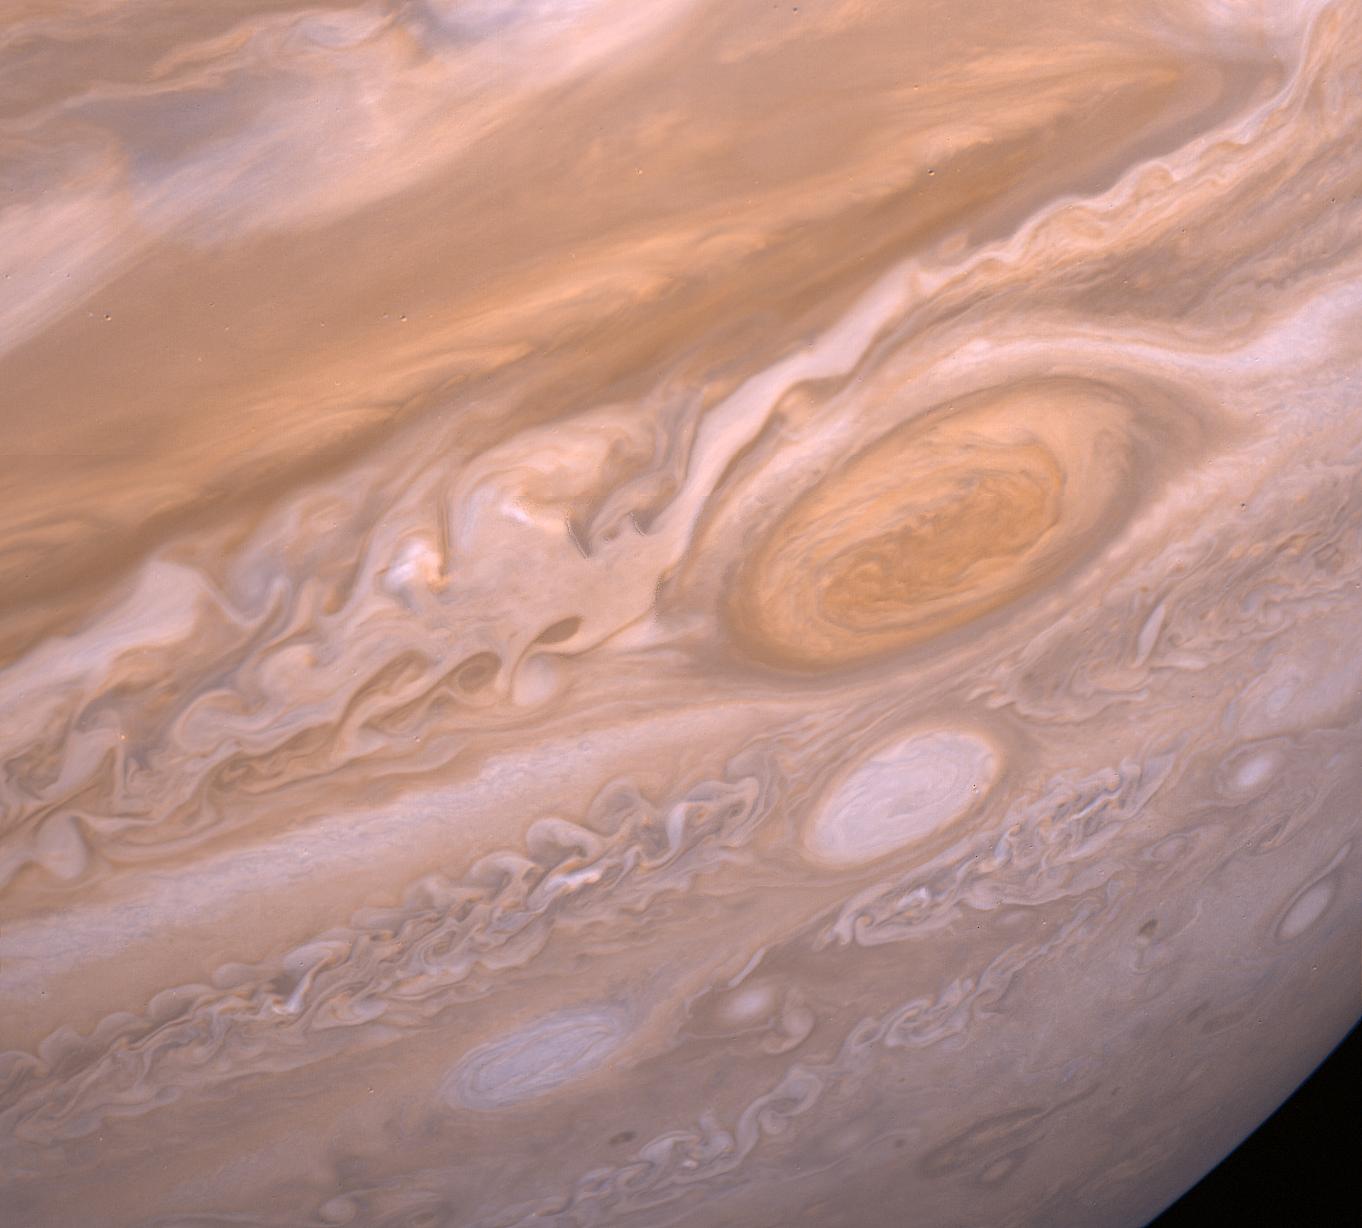 Jupiter's Violent Storms. Image taken by Voyager 2 in 1979.